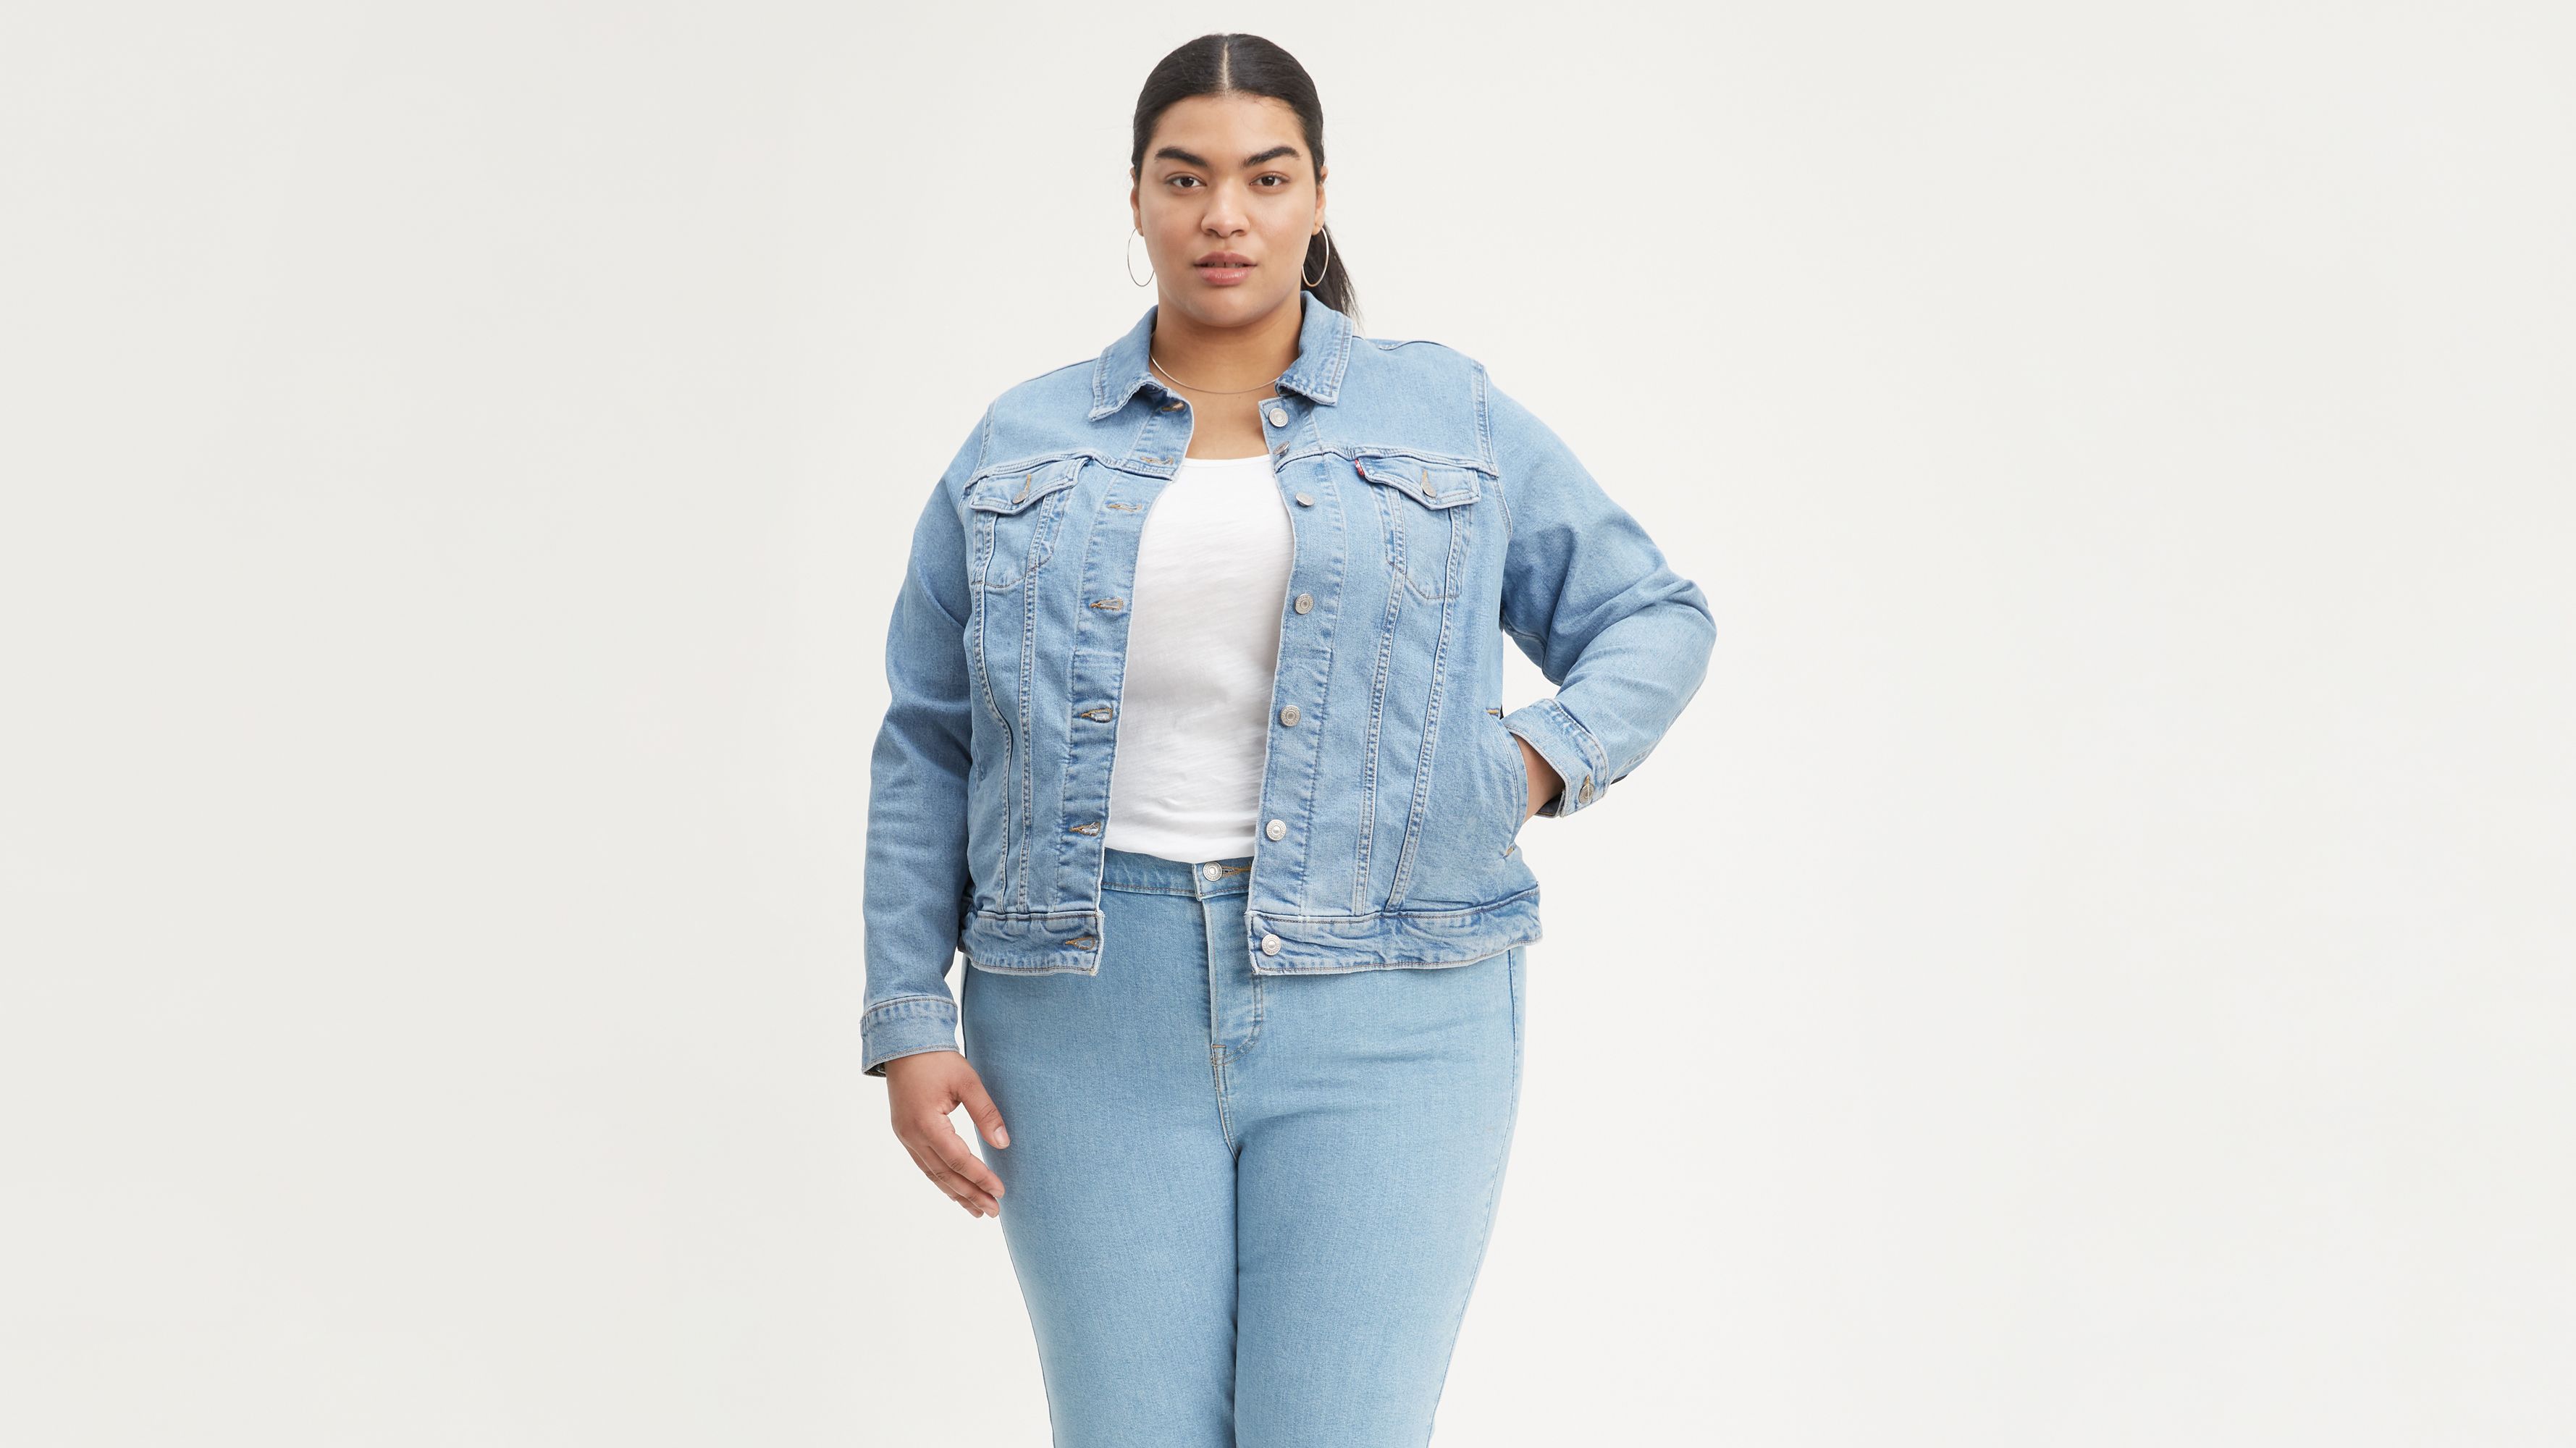 jean jacket plus size women's